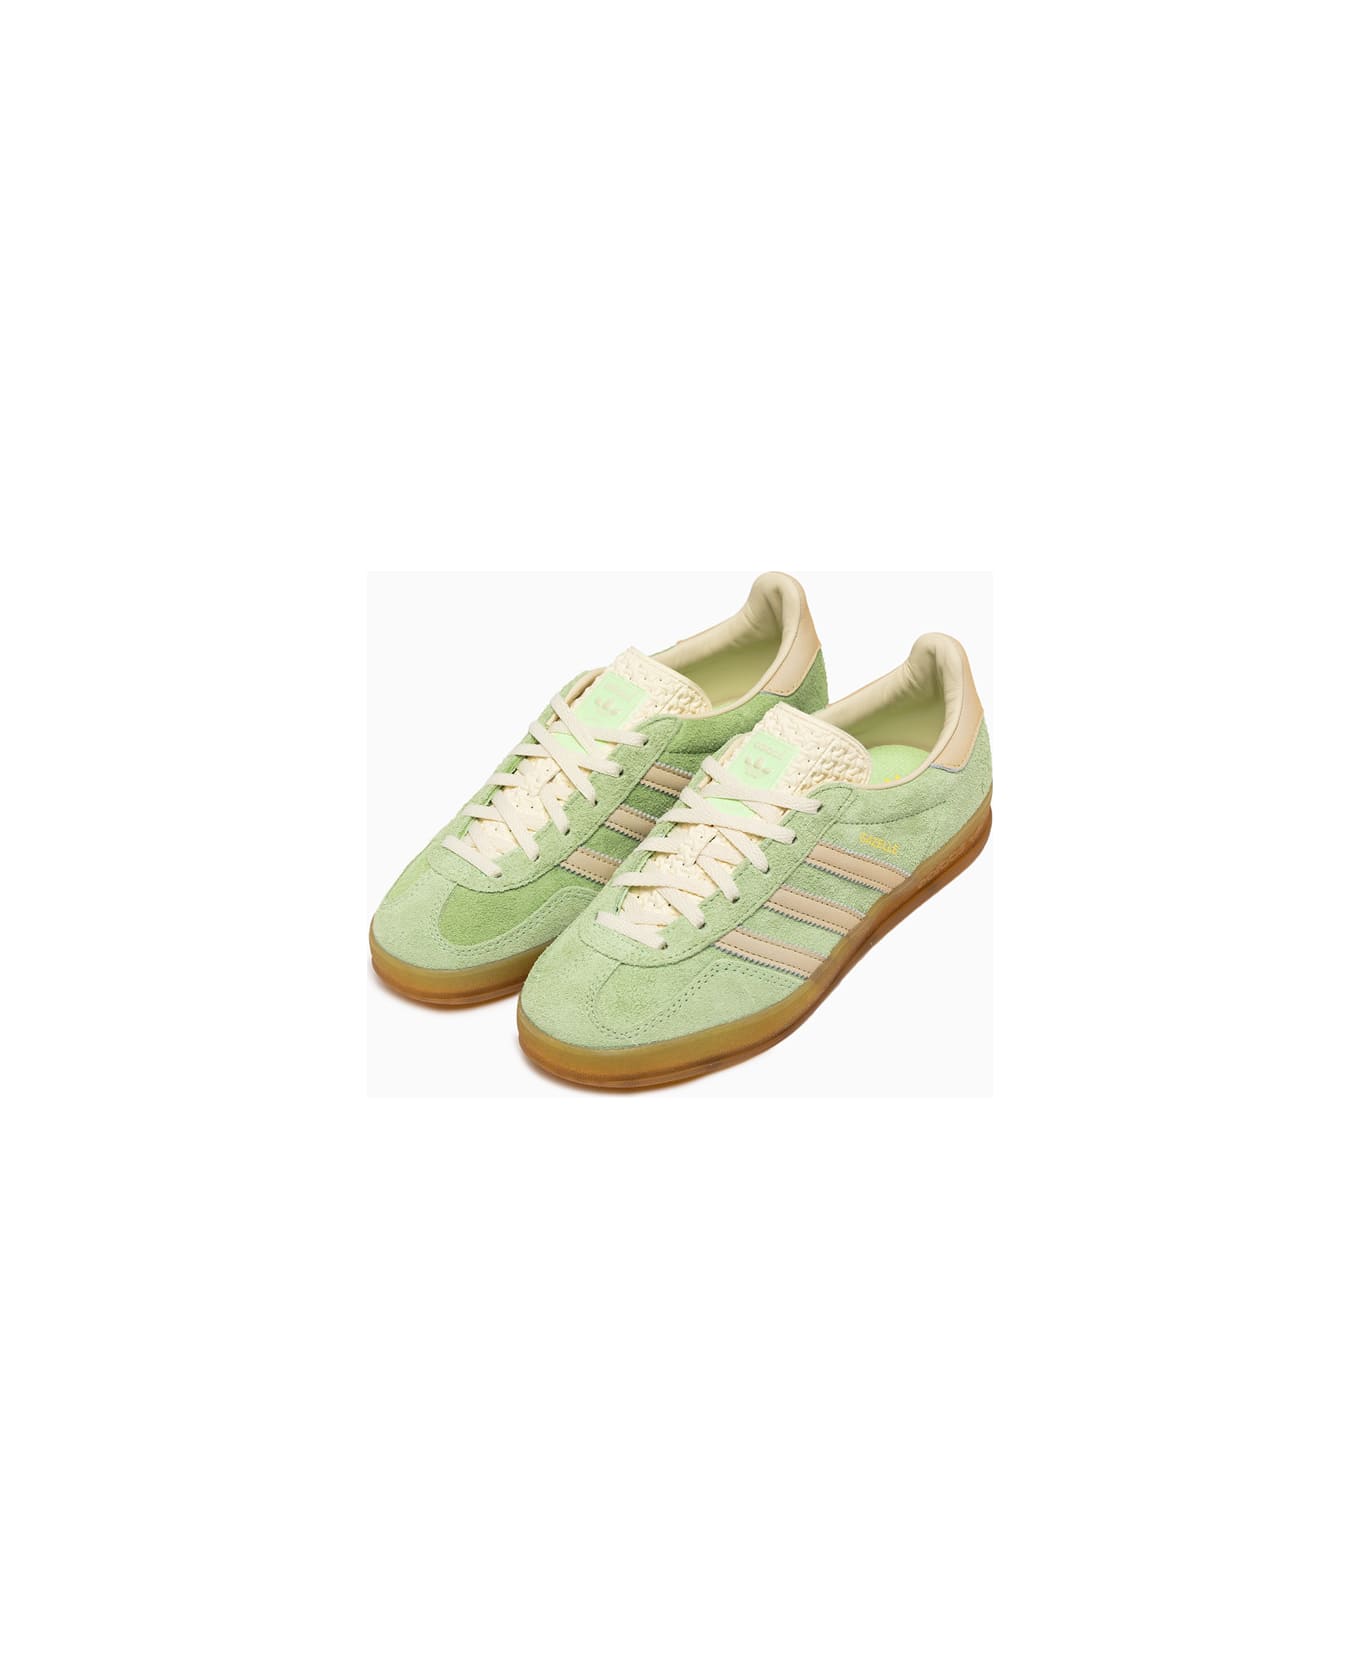 Adidas Originals Gazelle Indoor W Sneakers Ie2948 - Green スニーカー